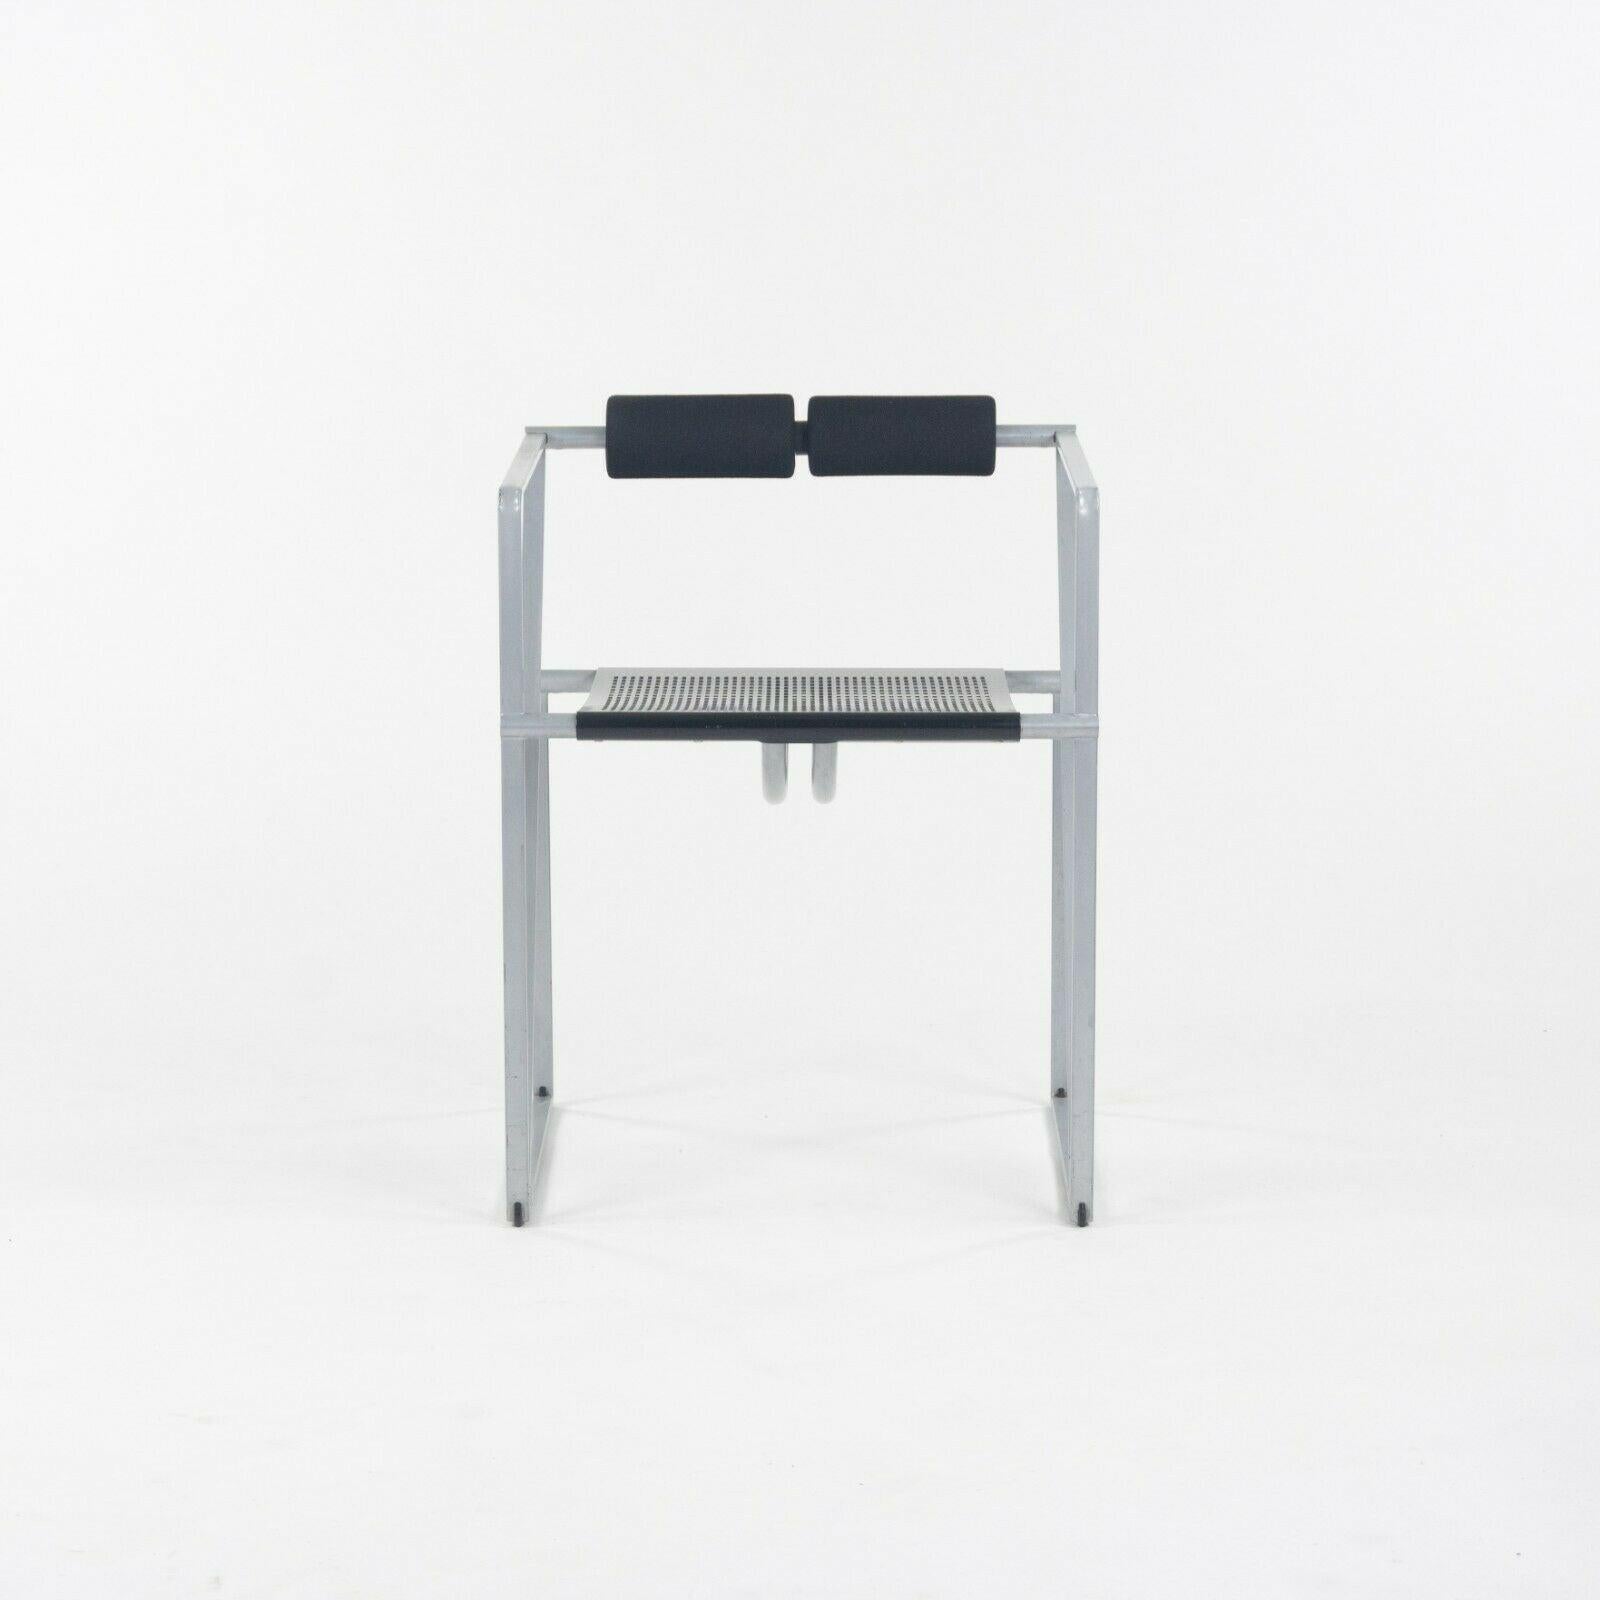 Zum Verkauf steht ein Paar postmoderne Mario Botta Seconda Sessel, die Mitte der 1980er Jahre von Alias hergestellt wurden. Es handelt sich um wunderschöne und ikonische Werke von Botta, dem berühmten Industriedesigner und Architekten. Die Stühle